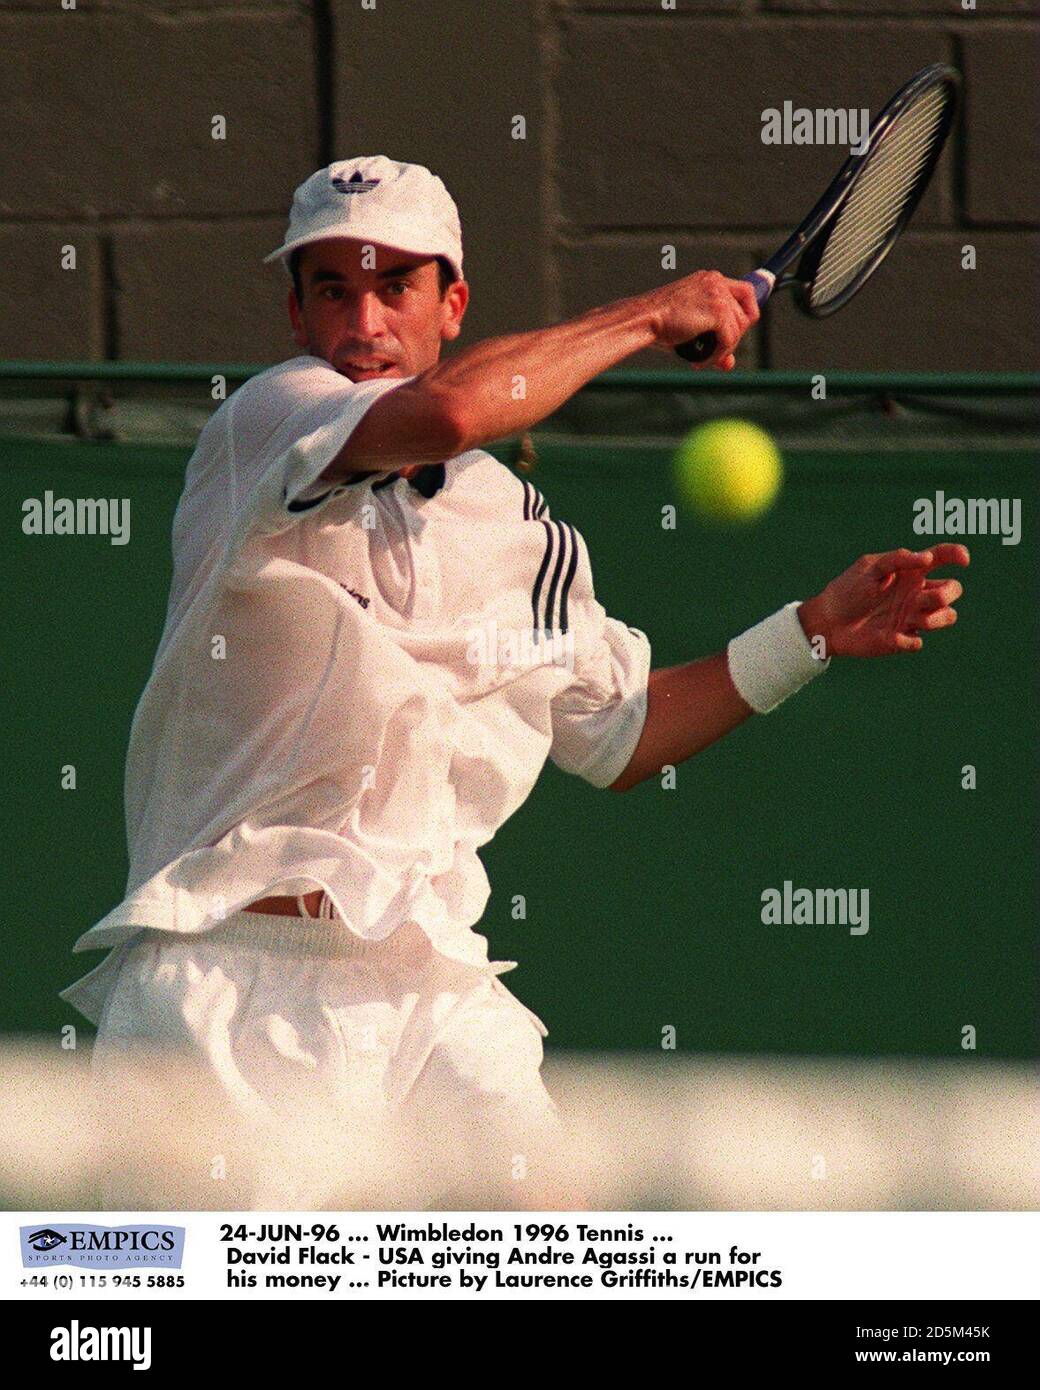 24-JUN-96... Wimbledon 1996 Tenis... Doug Flach (EE.UU.) dando a Andre Agassi una carrera por su dinero ... Foto de Laurence Griffiths/EMPICS Foto de stock